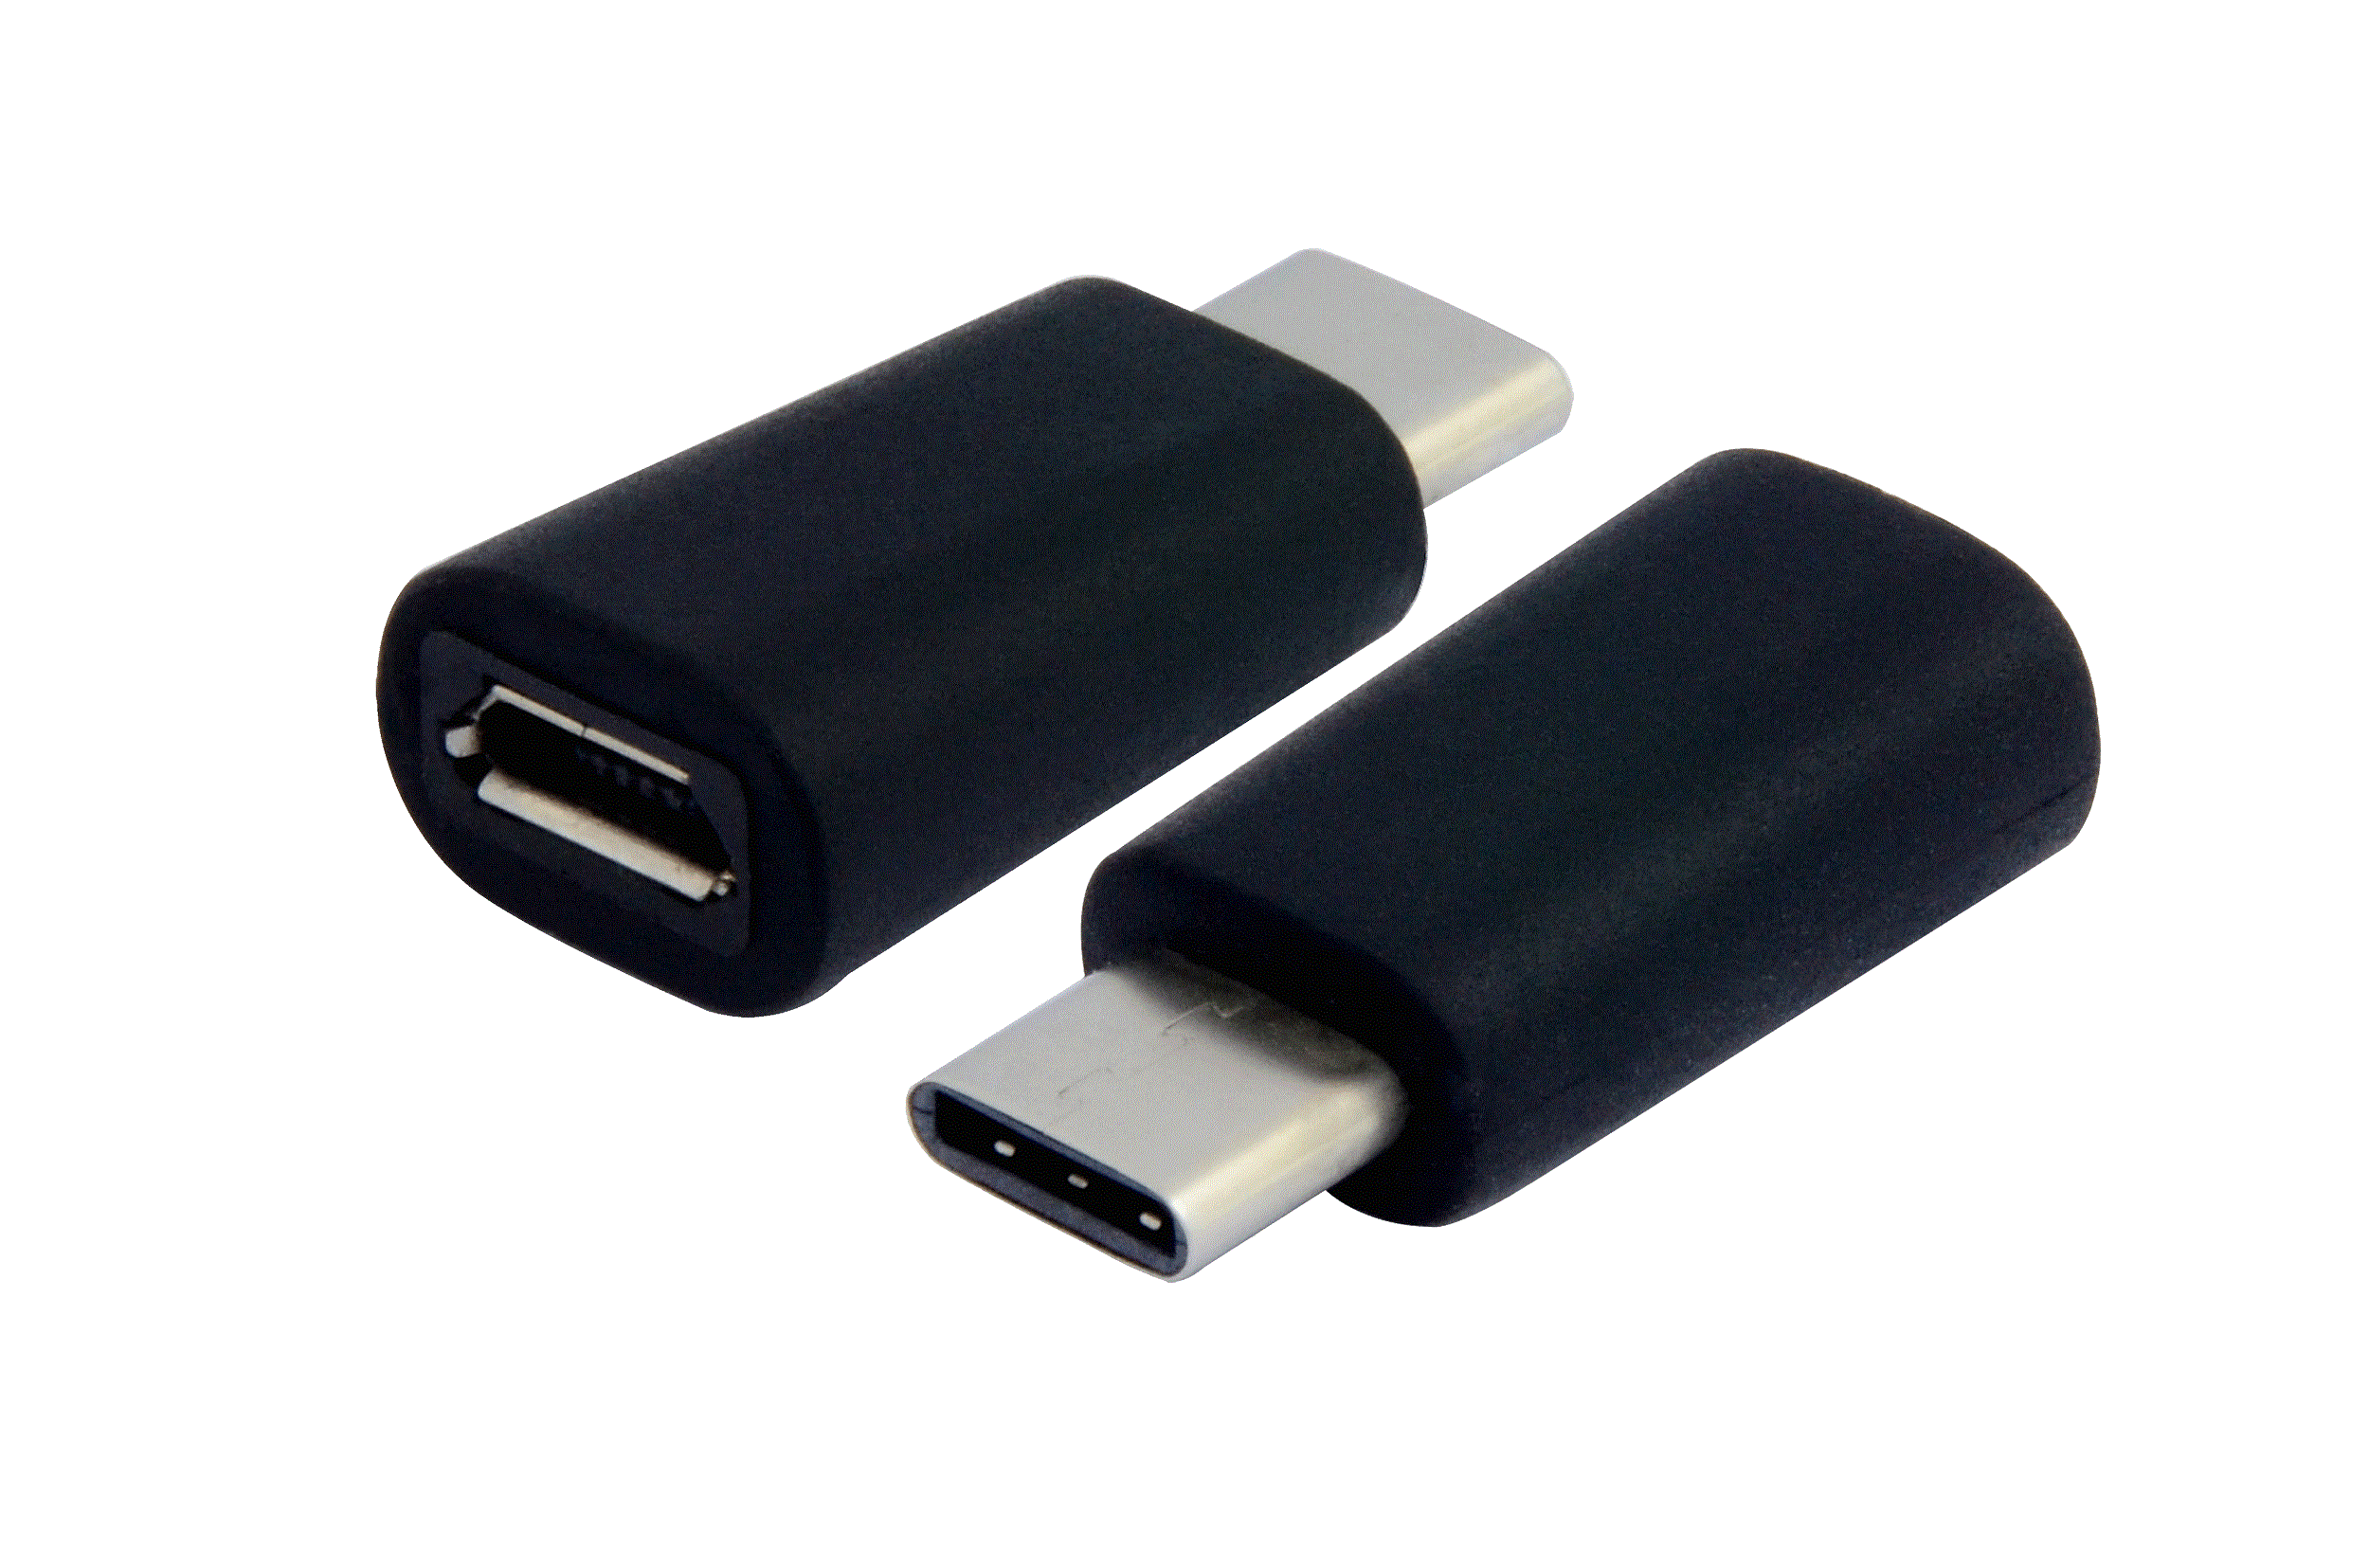 390 USB Type C to USB2